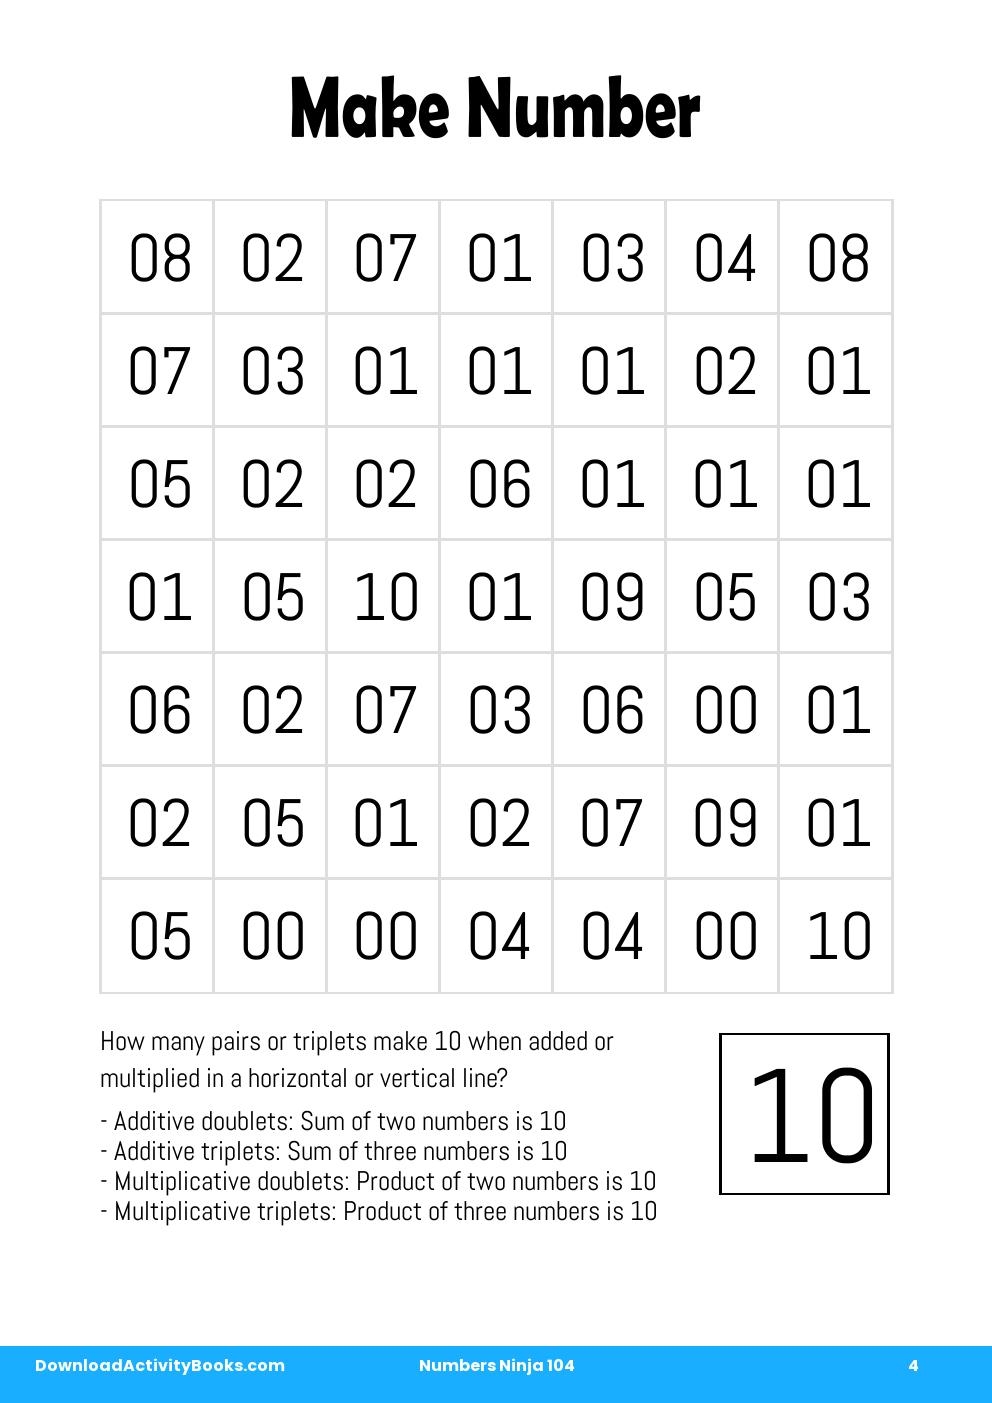 Make Number in Numbers Ninja 104